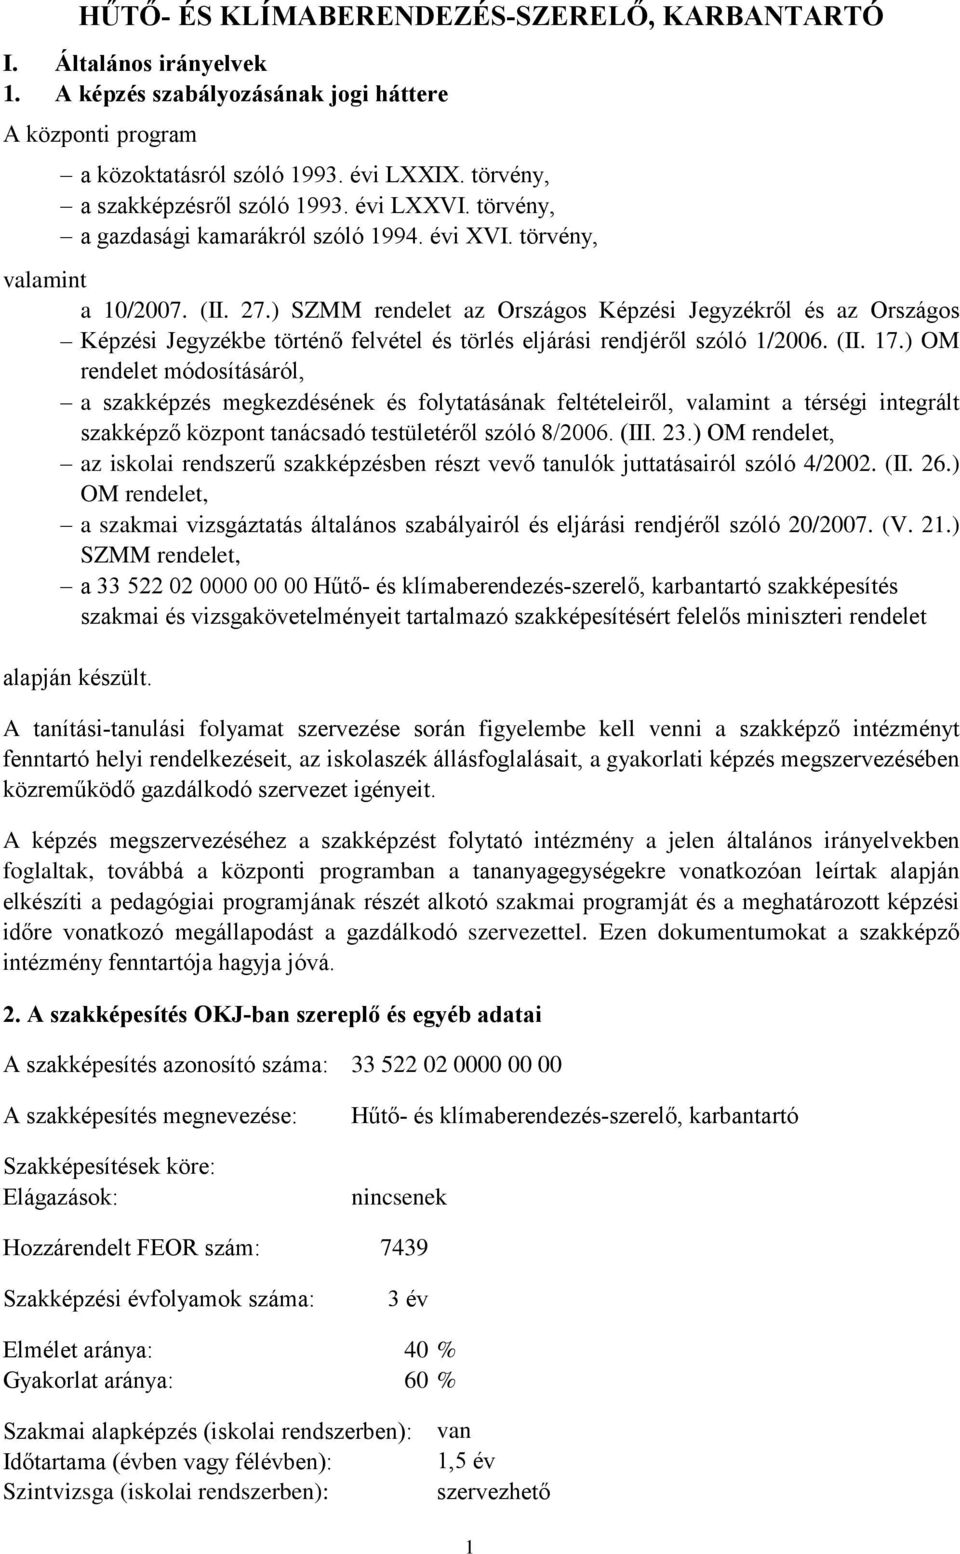 HŰTŐ- ÉS KLÍMABERENDEZÉS-SZERELŐ, KARBANTARTÓ - PDF Free Download